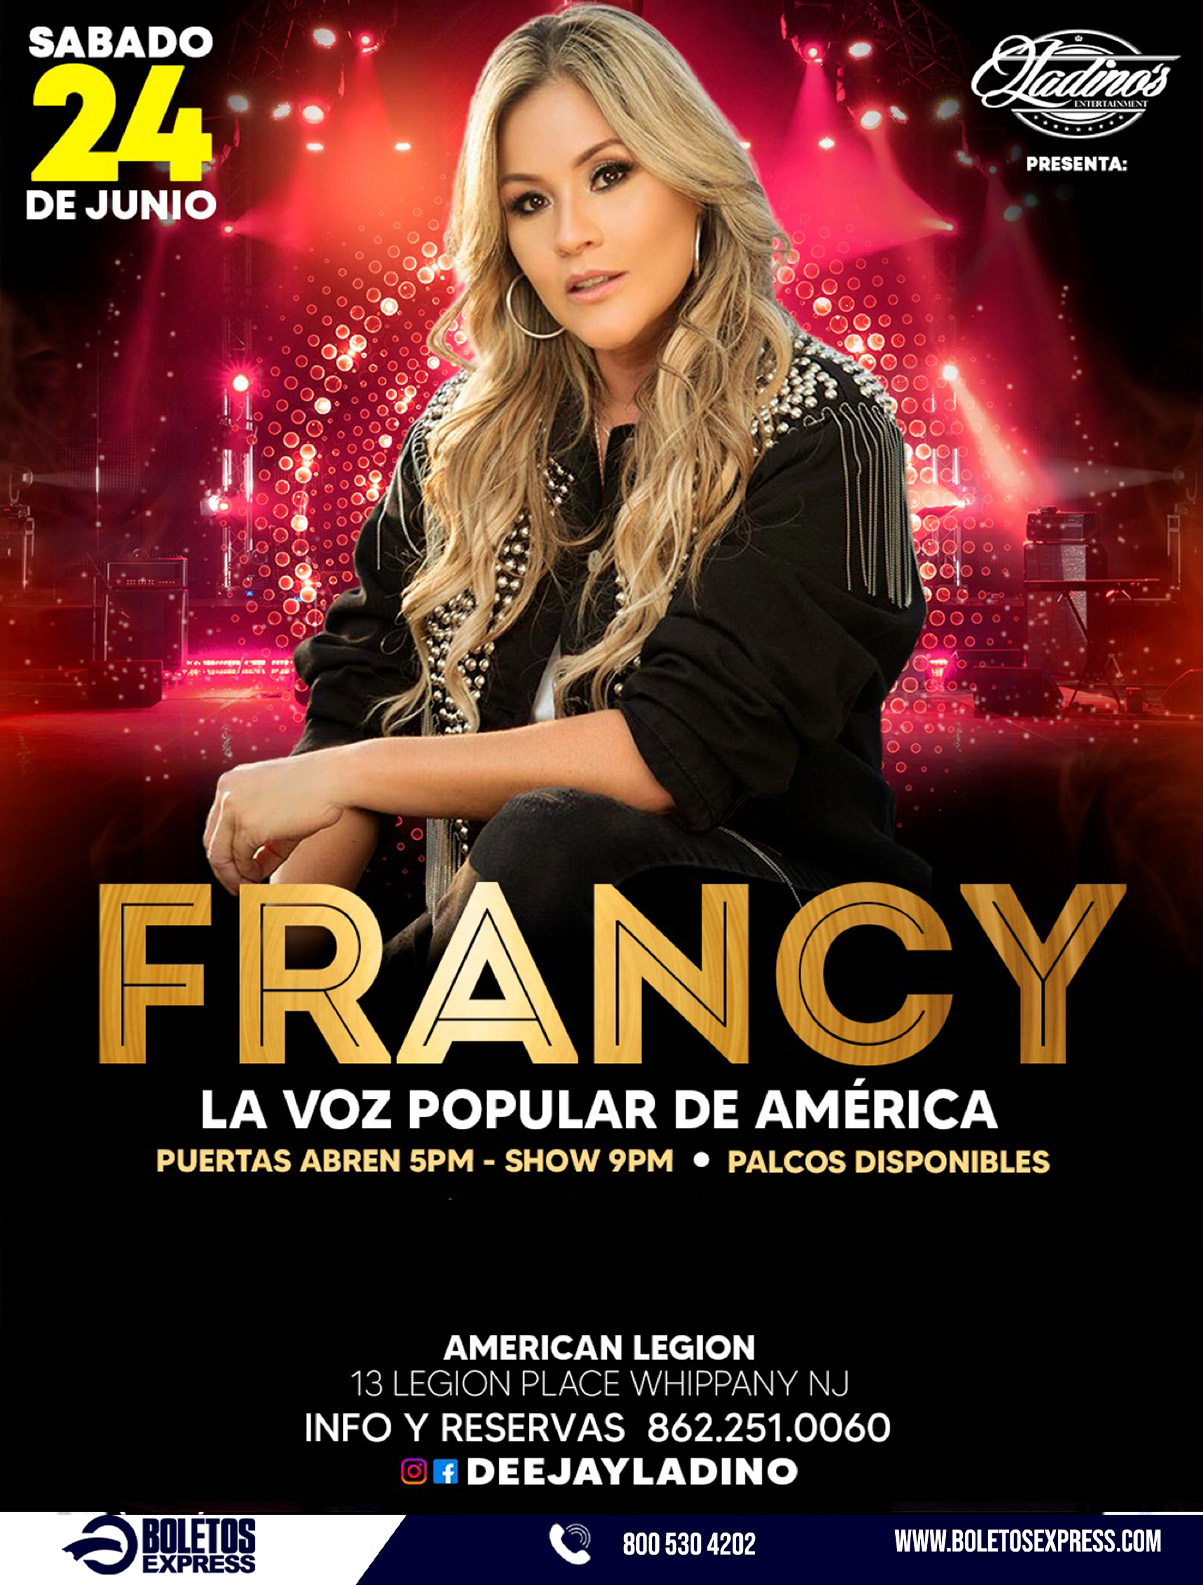 FRANCY LA VOZ POPULAR DE AMERICA